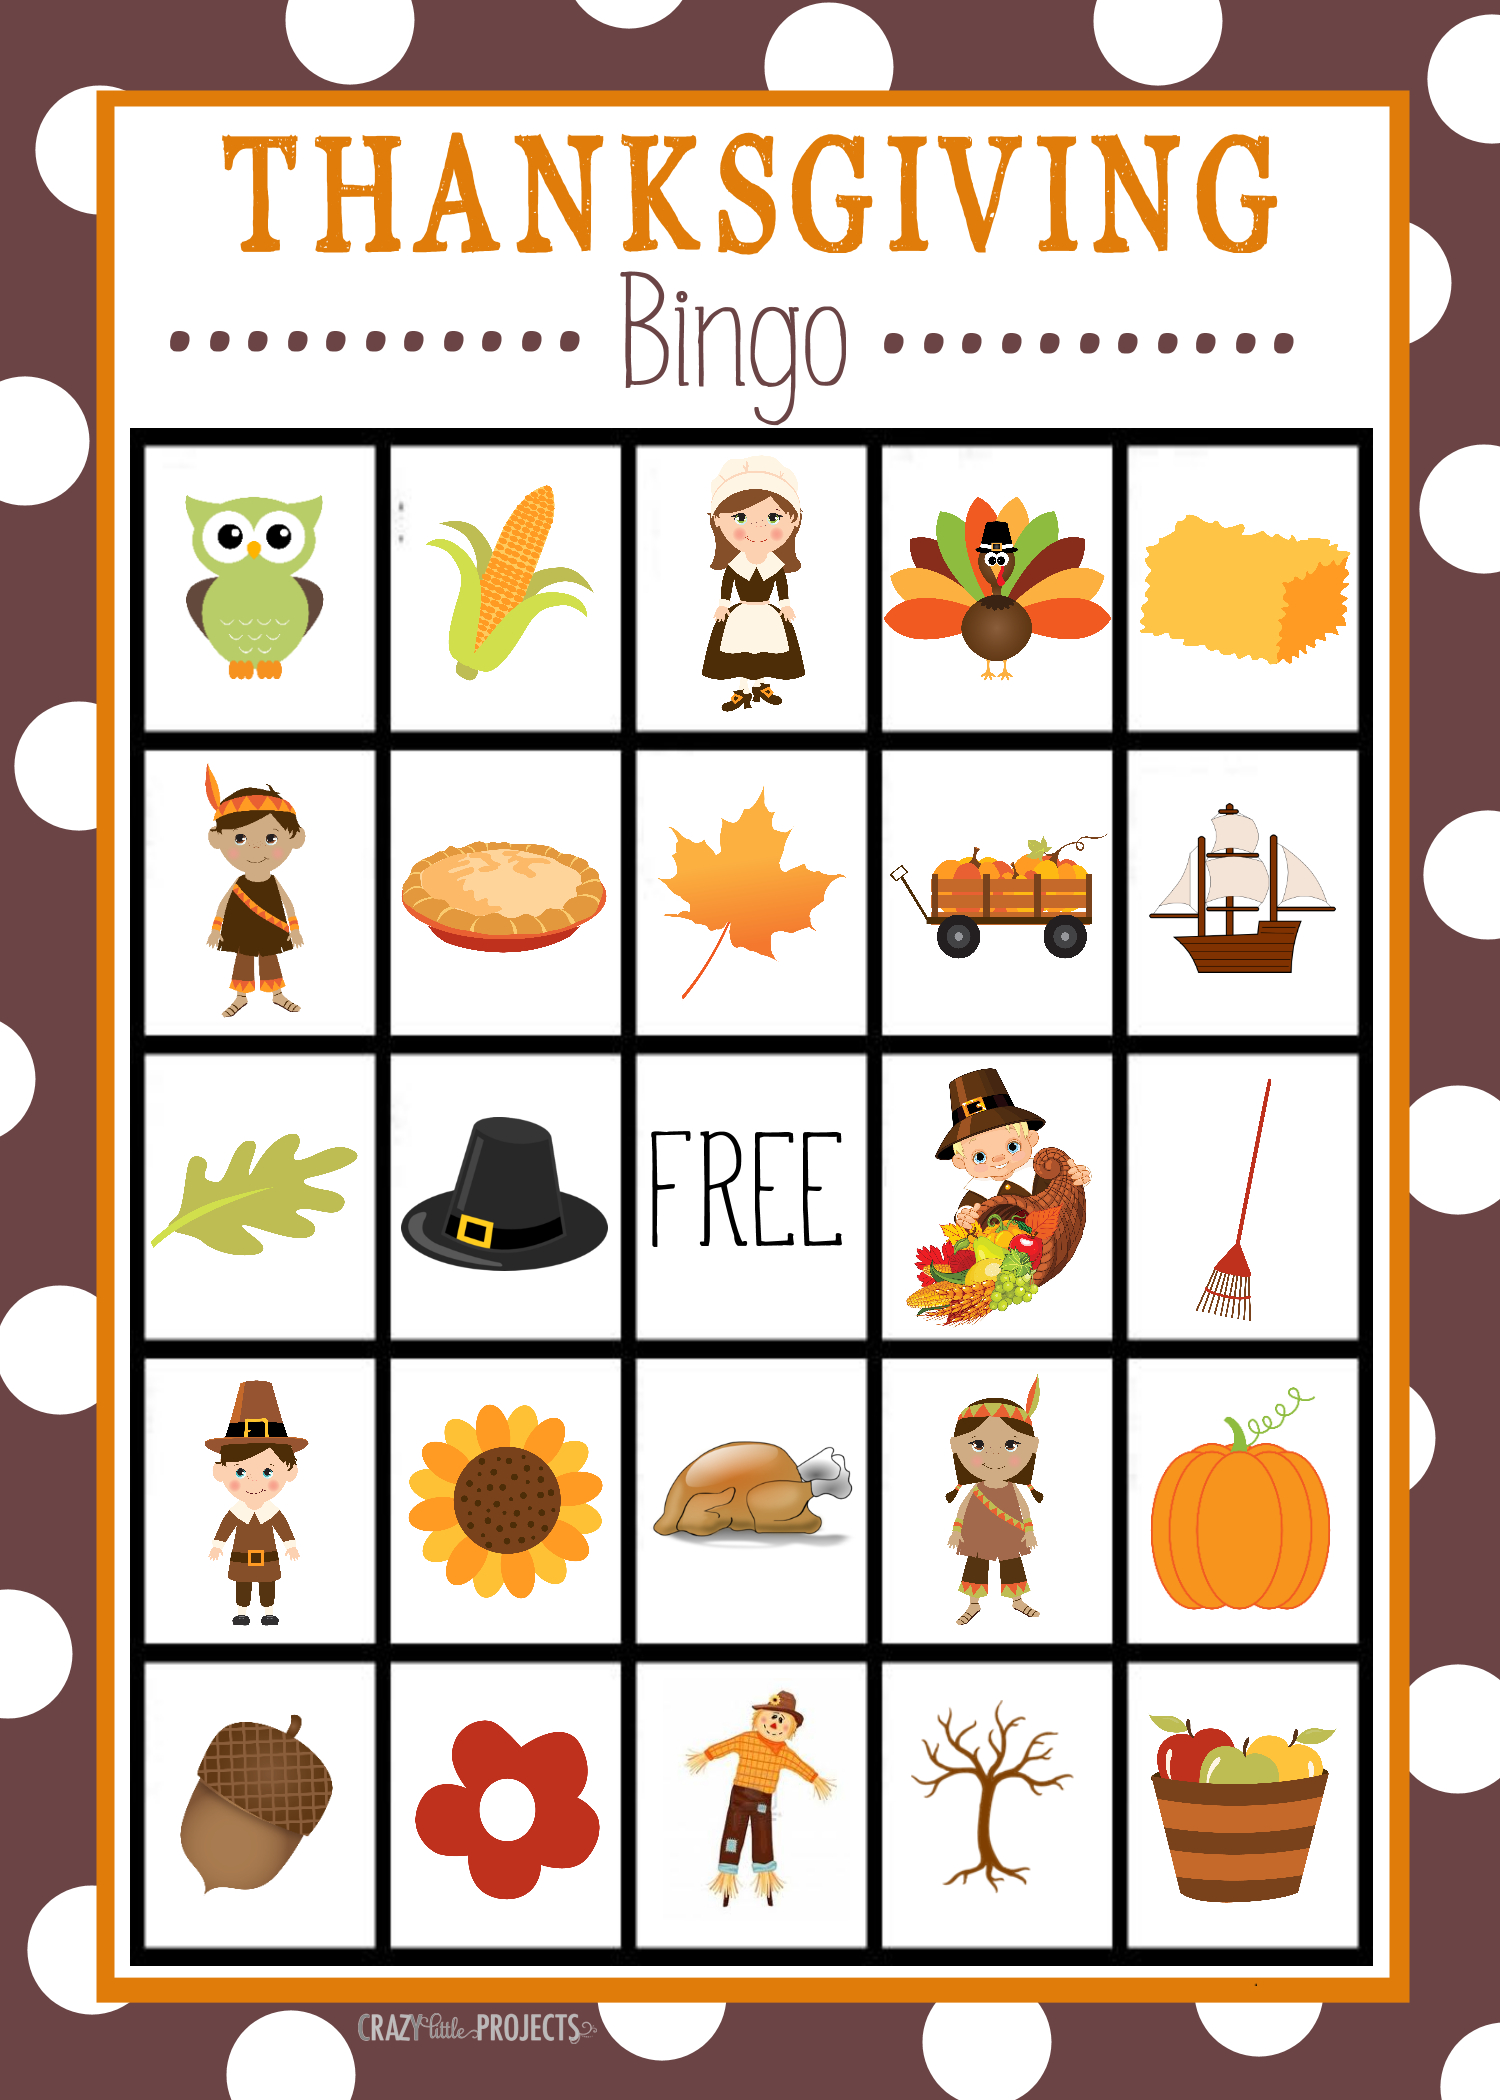 Free Printable Thanksgiving Bingo Game | Craft Time | Pinterest - Free Printable Thanksgiving Images